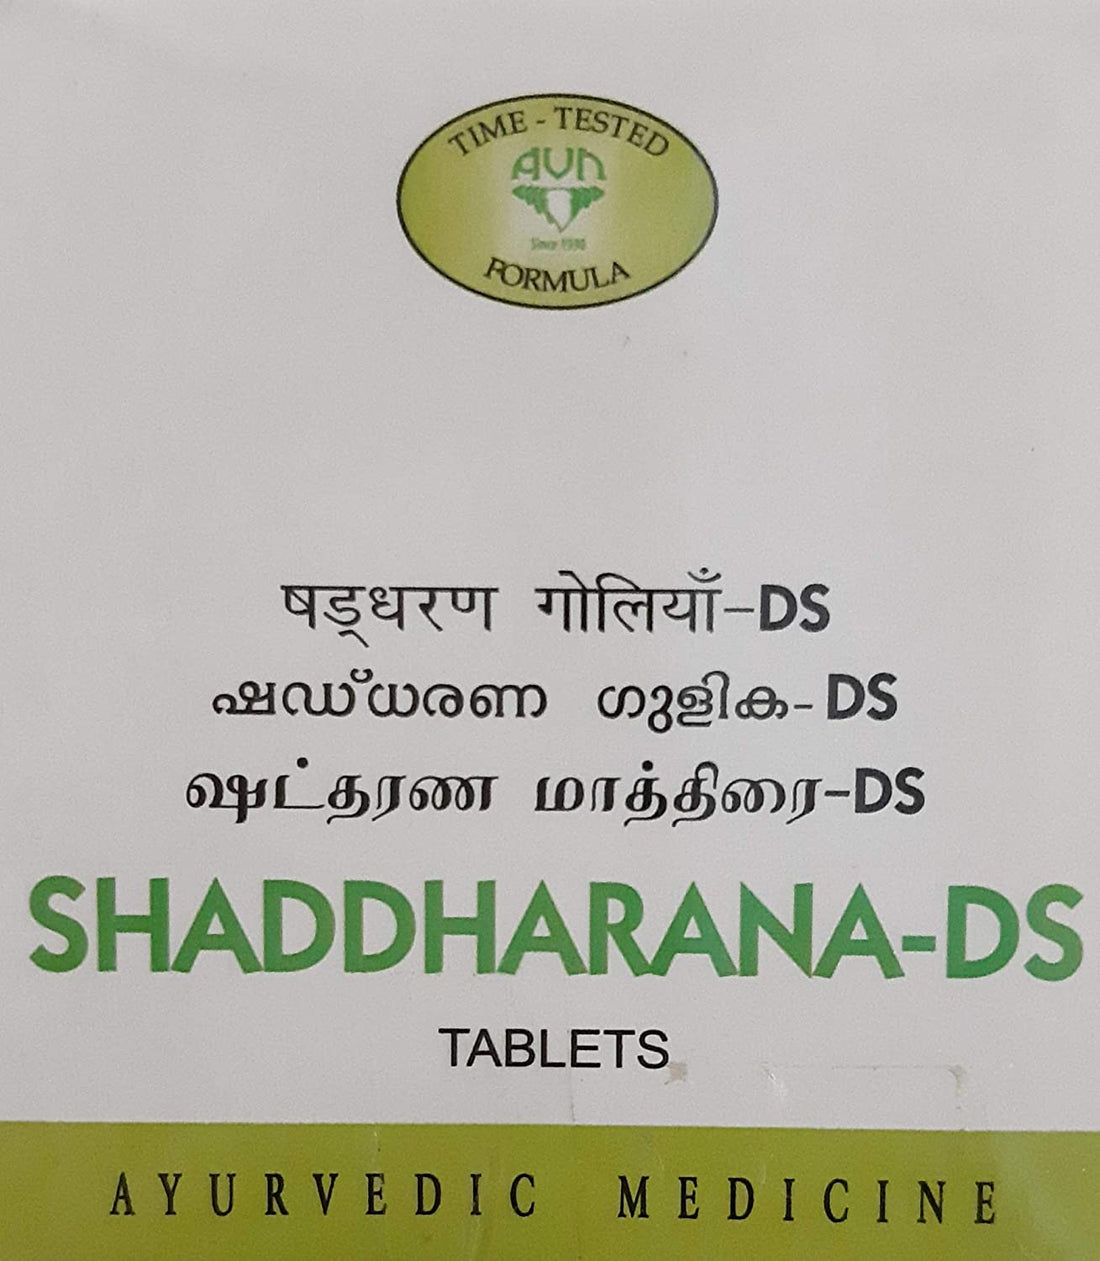 AVN Shaddharana DS Tablets